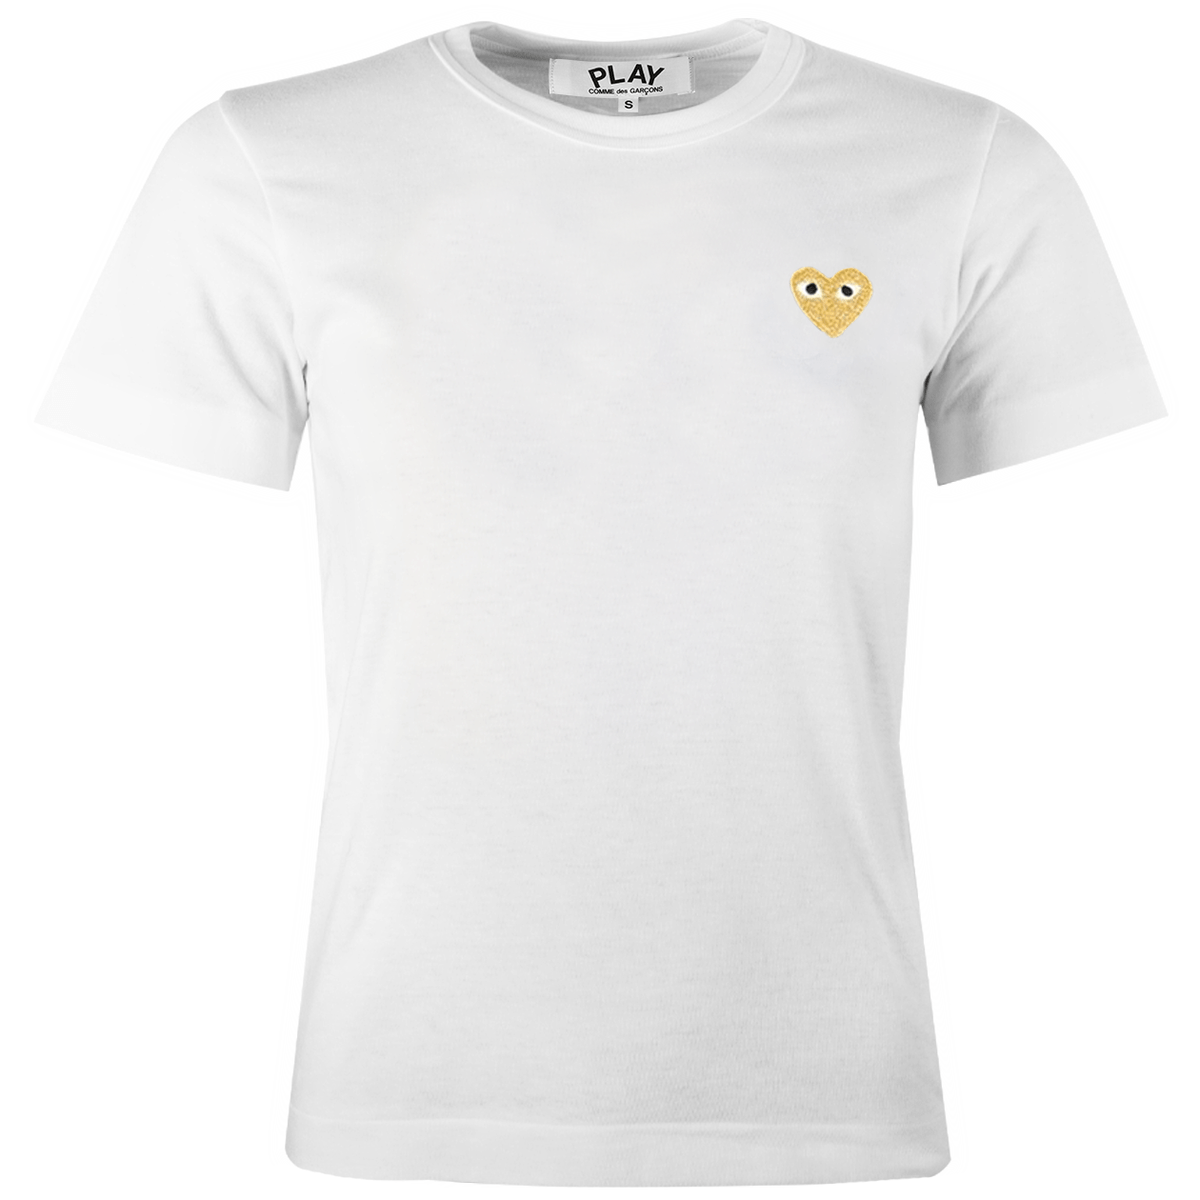 T215 Gold Heart T-shirt White S White